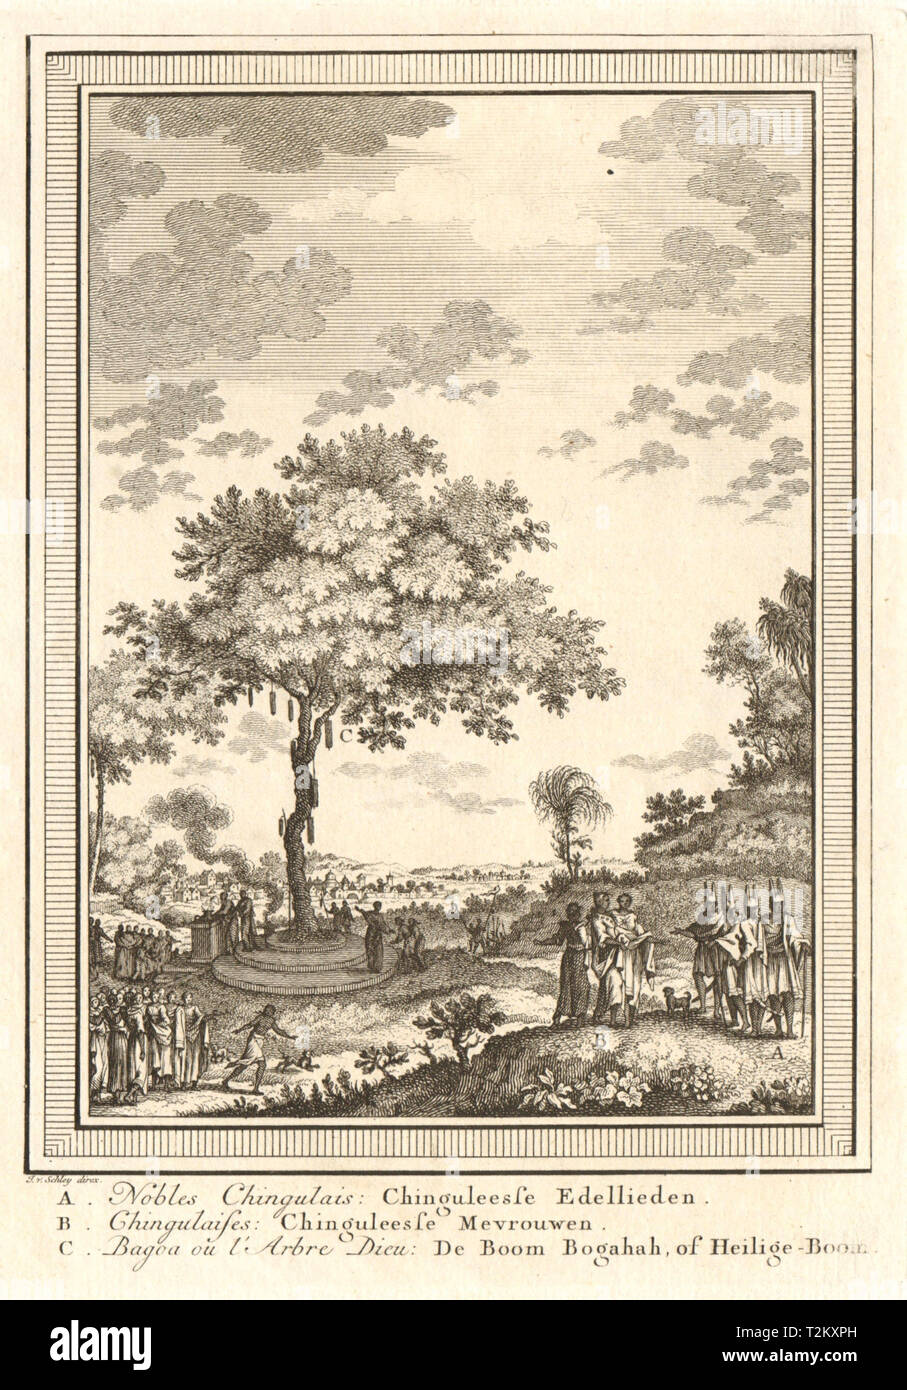 Sri Lanka. Sinhalese nobles. Sacred Bodhi Tree, Bodh Gaya. Ceylon. SCHLEY 1755 Stock Photo